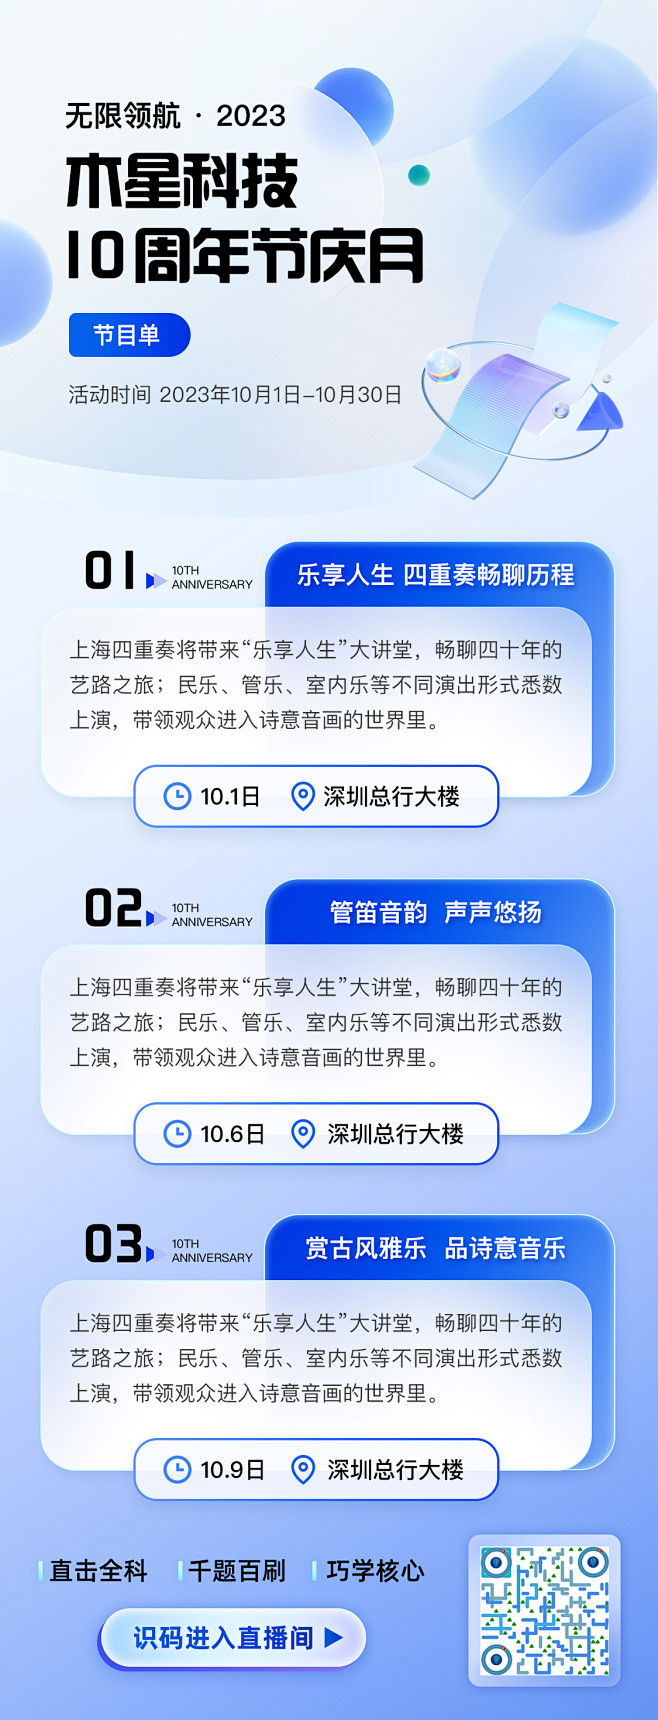 周年庆海报-志设网-zs9.com